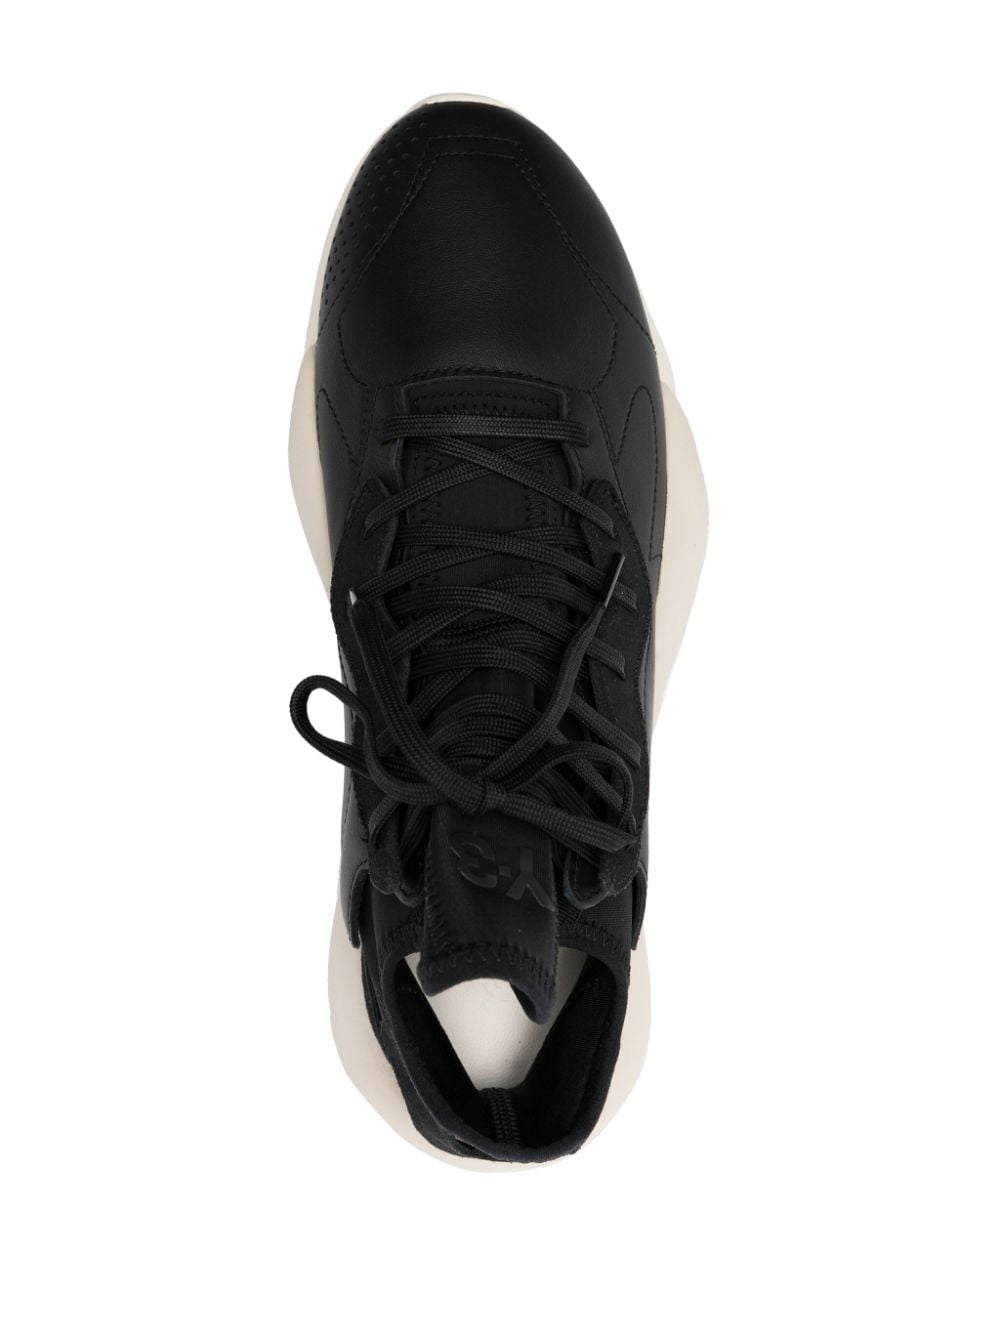 Black y3 kaiwa sneaker